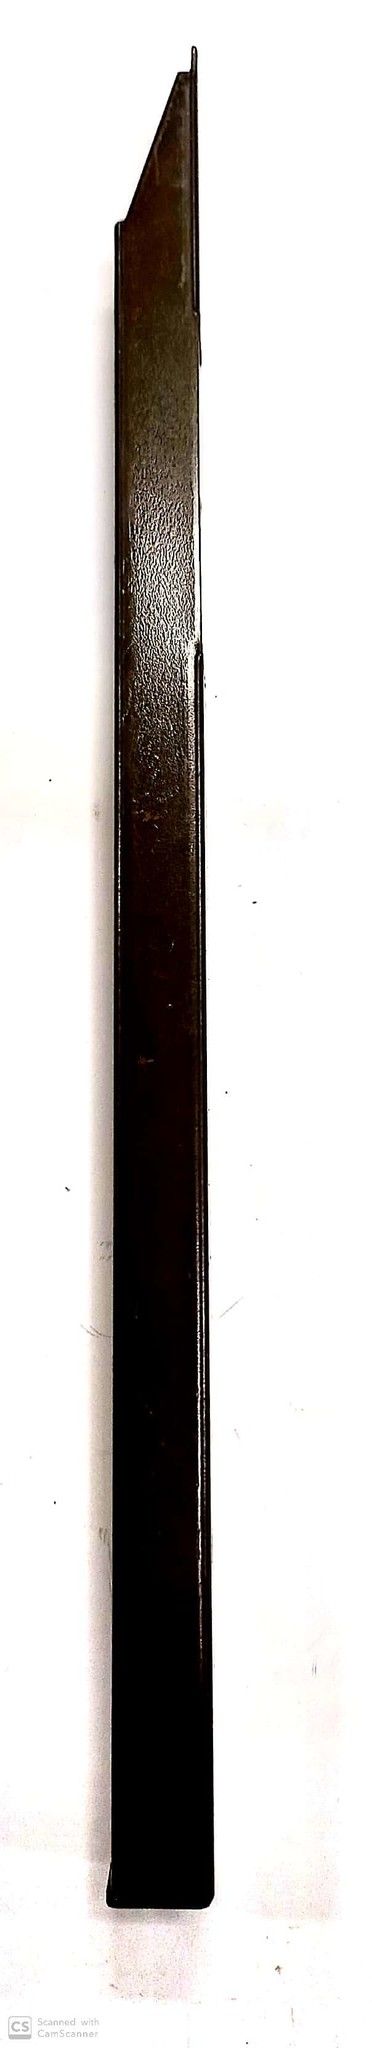 Catenaccio a pulsante cm 25 in ferro bronzato AGB 310